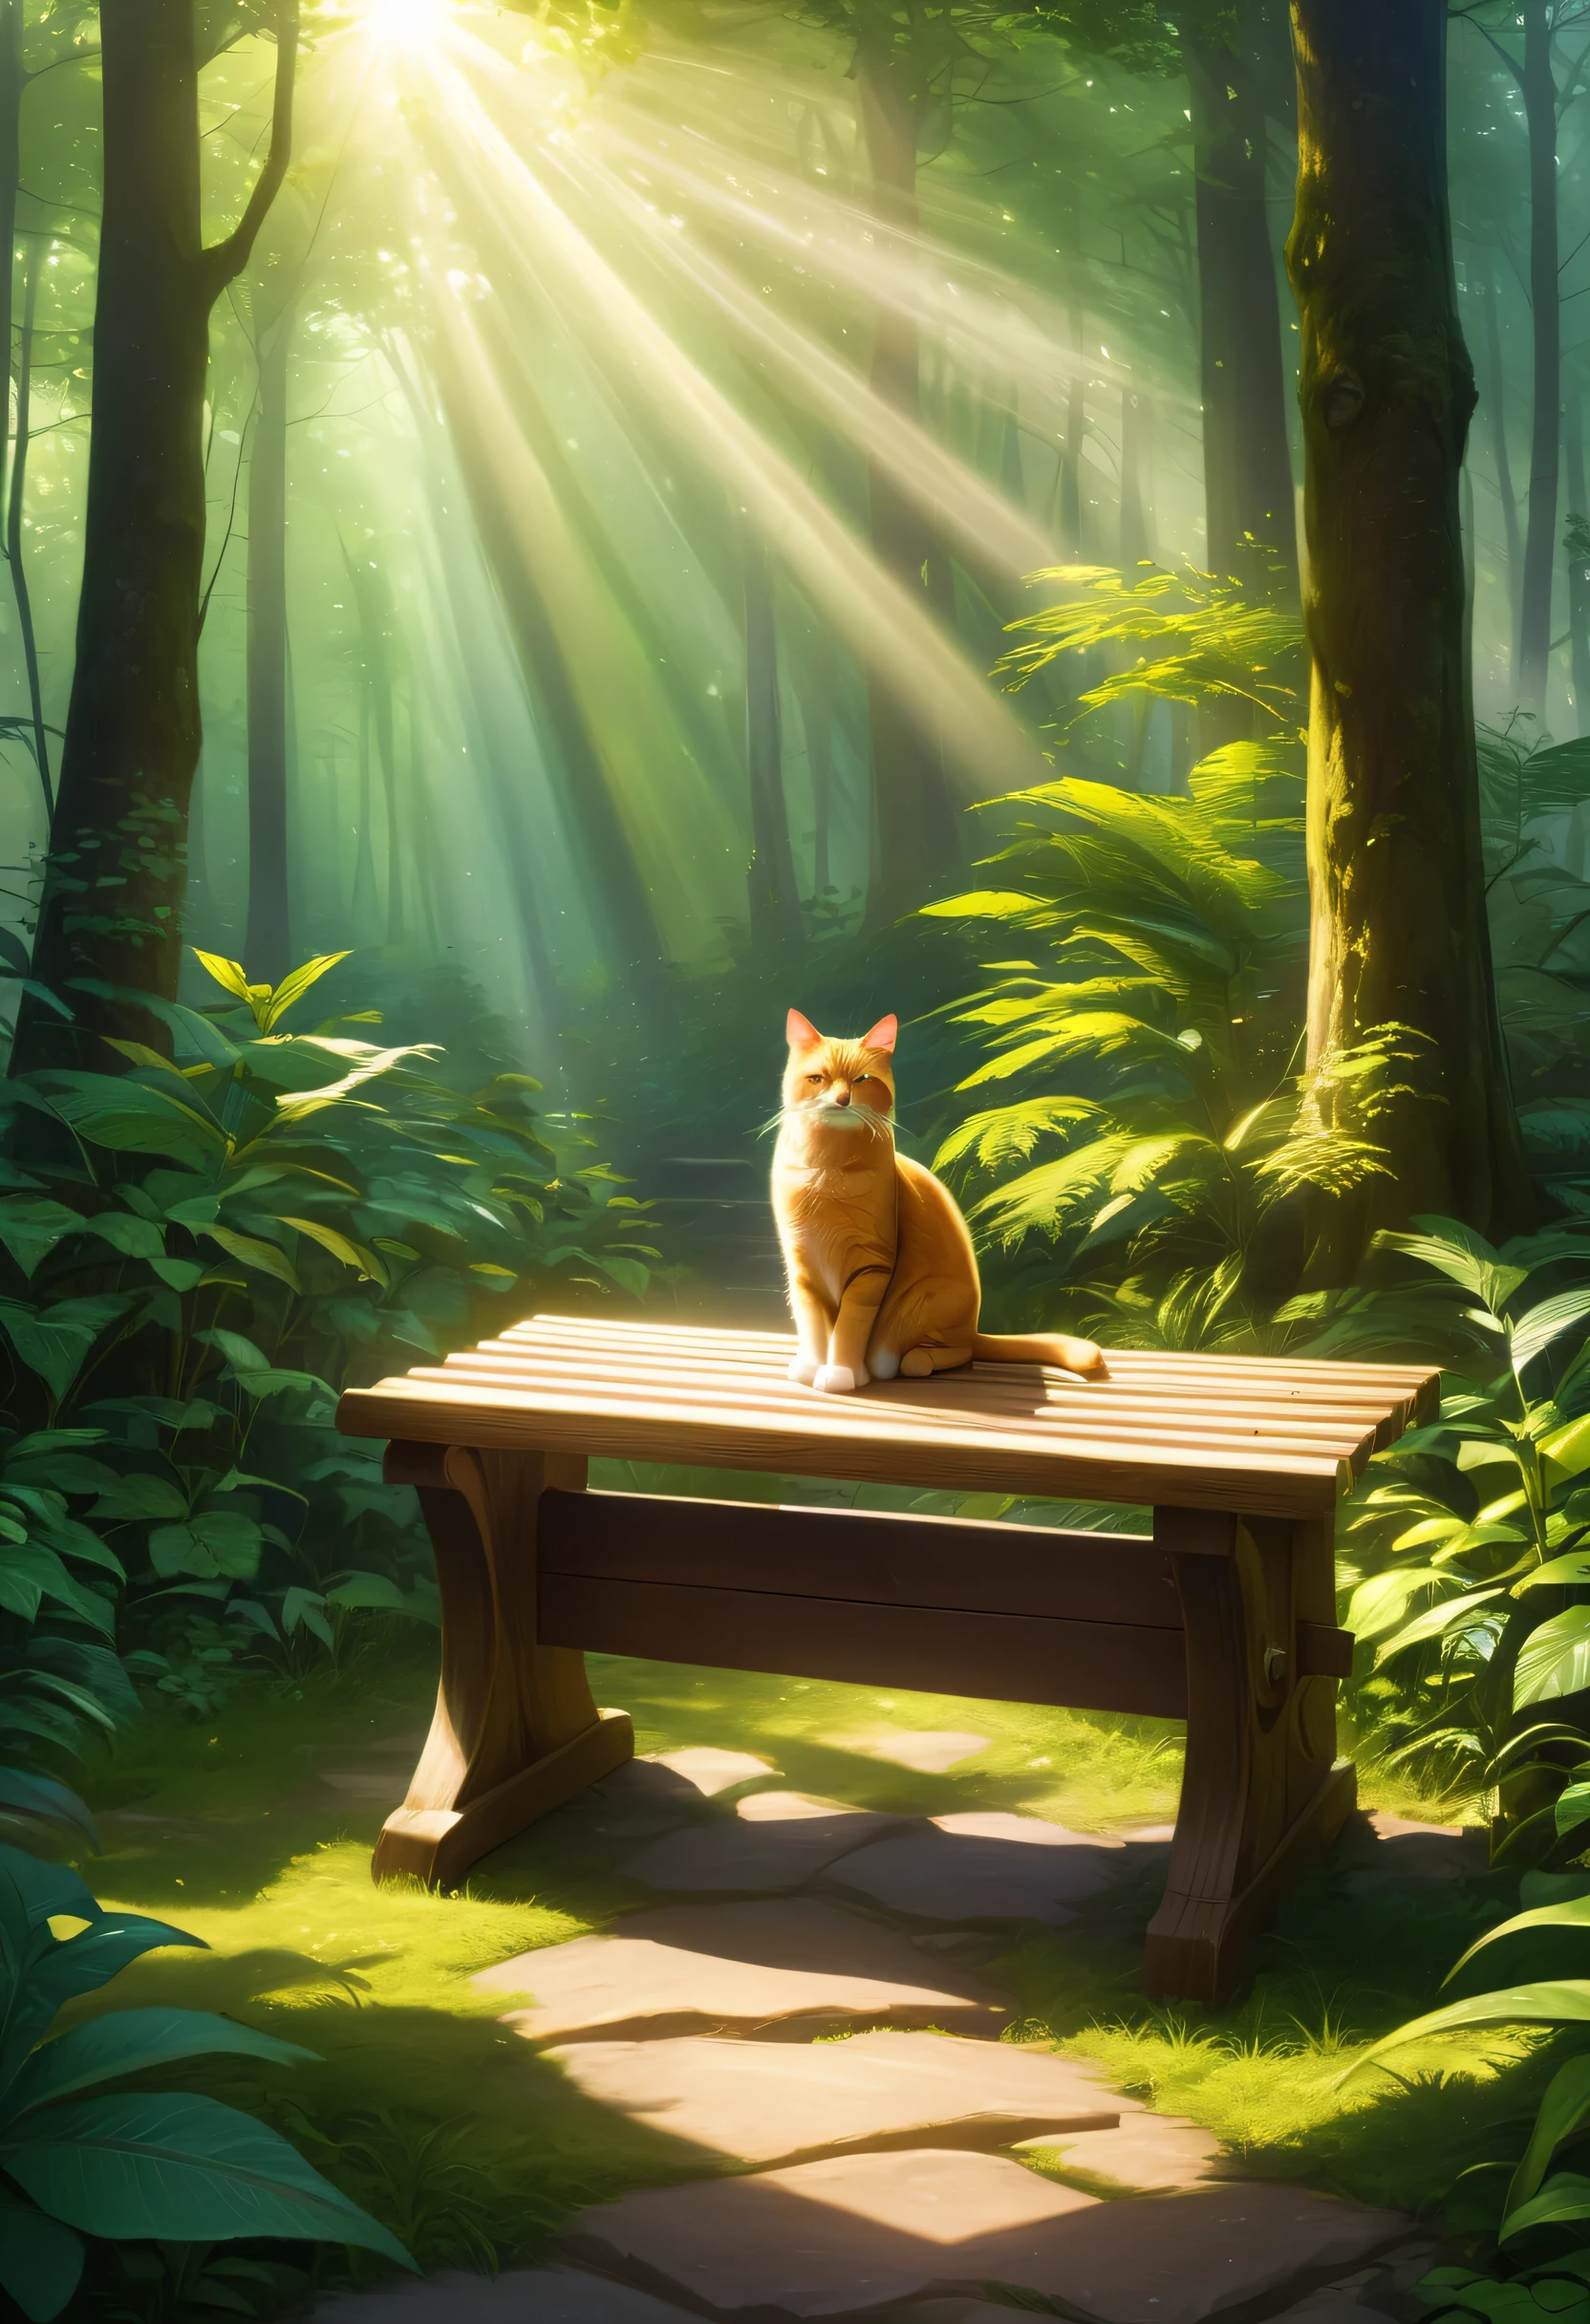 (틴들 효과: 1.1), 빛이 어떻게 분산되고 산란되는지, 안개가 자욱한 숲, 나무가 있는 숲 속의 벤치에 앉아 있는 고양이, and the 틴들 효과 allows light to shine through and illuminate the cat